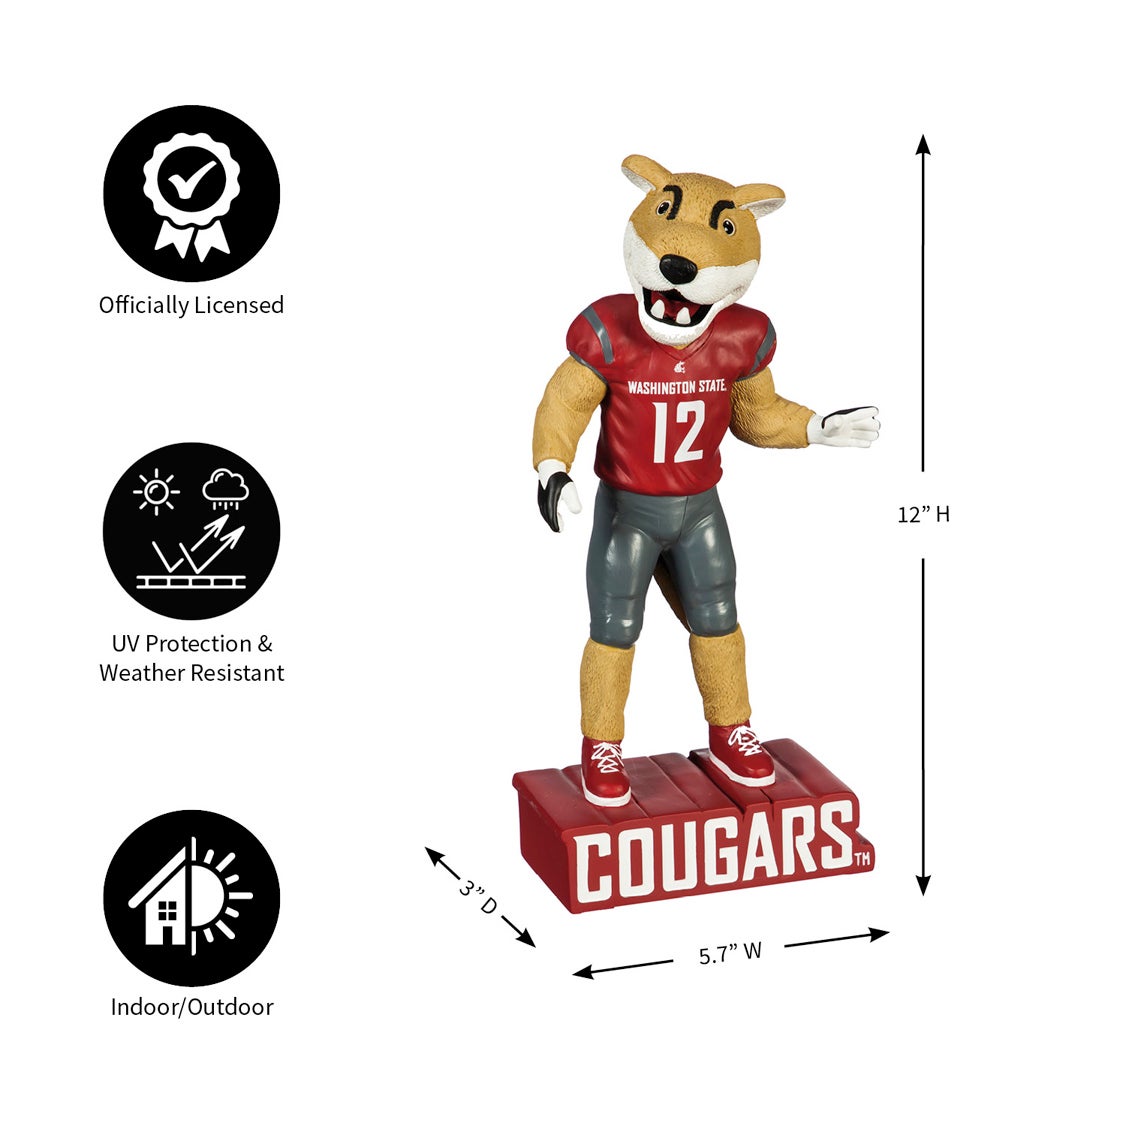 Washington State University Mascot Statue